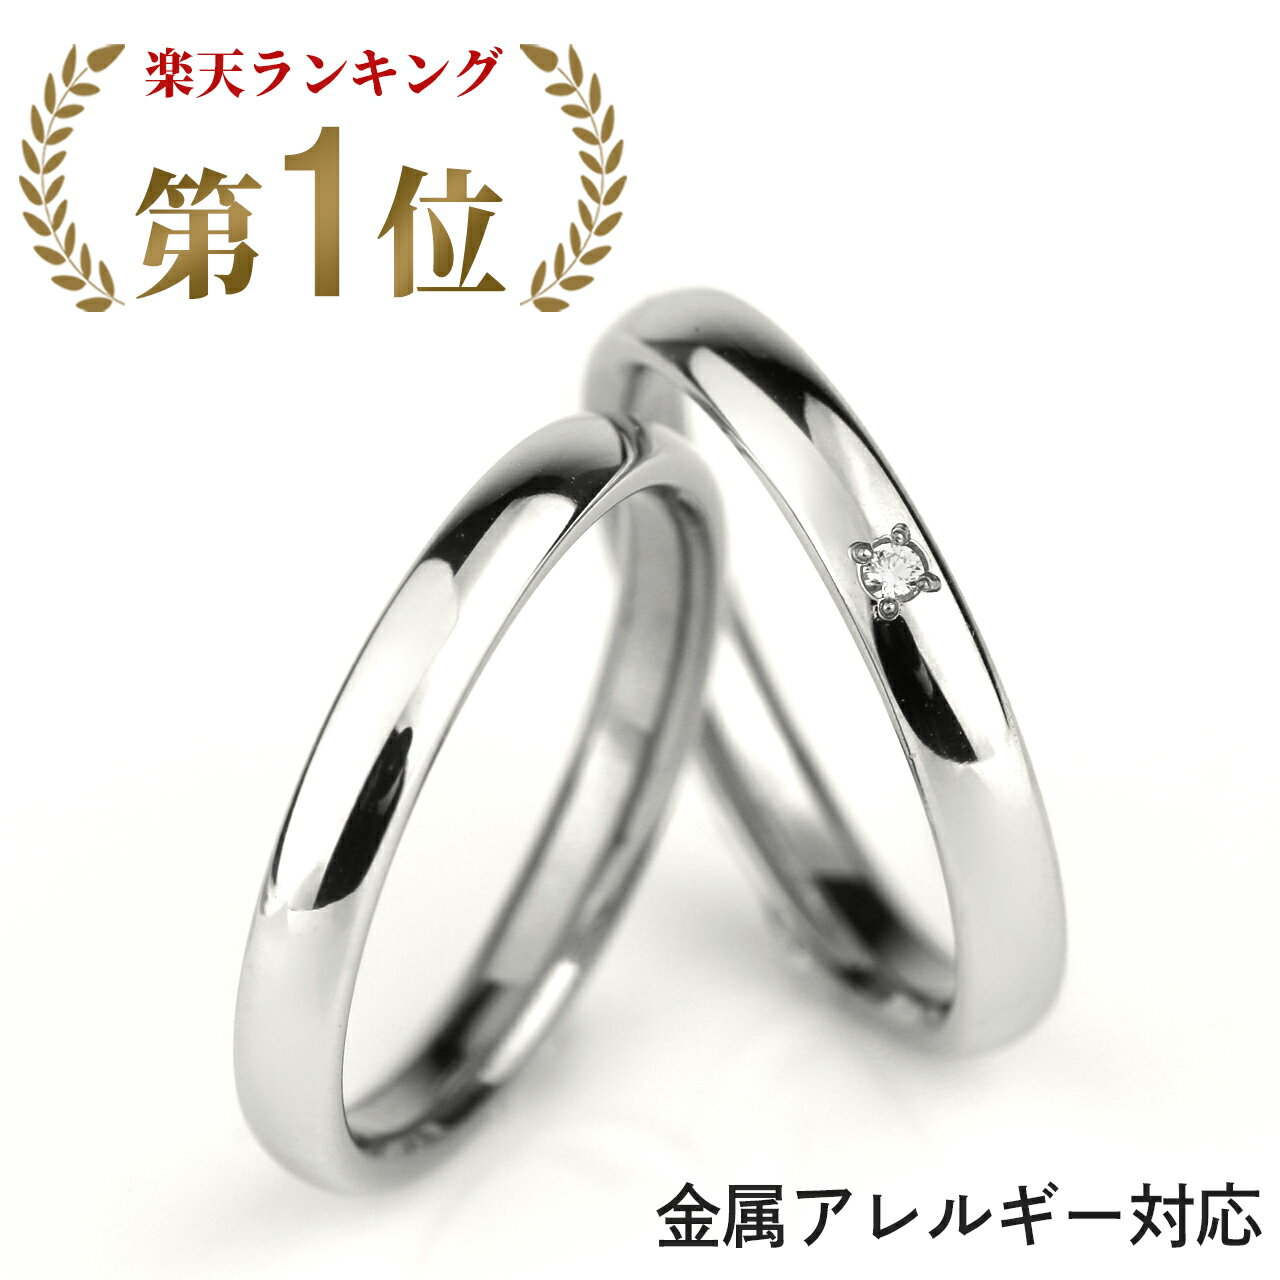 結婚指輪 マリッジリング プラチナ ブライダルリング ペアリング 刻印 チタン ダイヤモンド リング 指輪 純チタン 金属アレルギー対応 錆びない つけっぱなし シンプル 人気 ペア セット 名入…